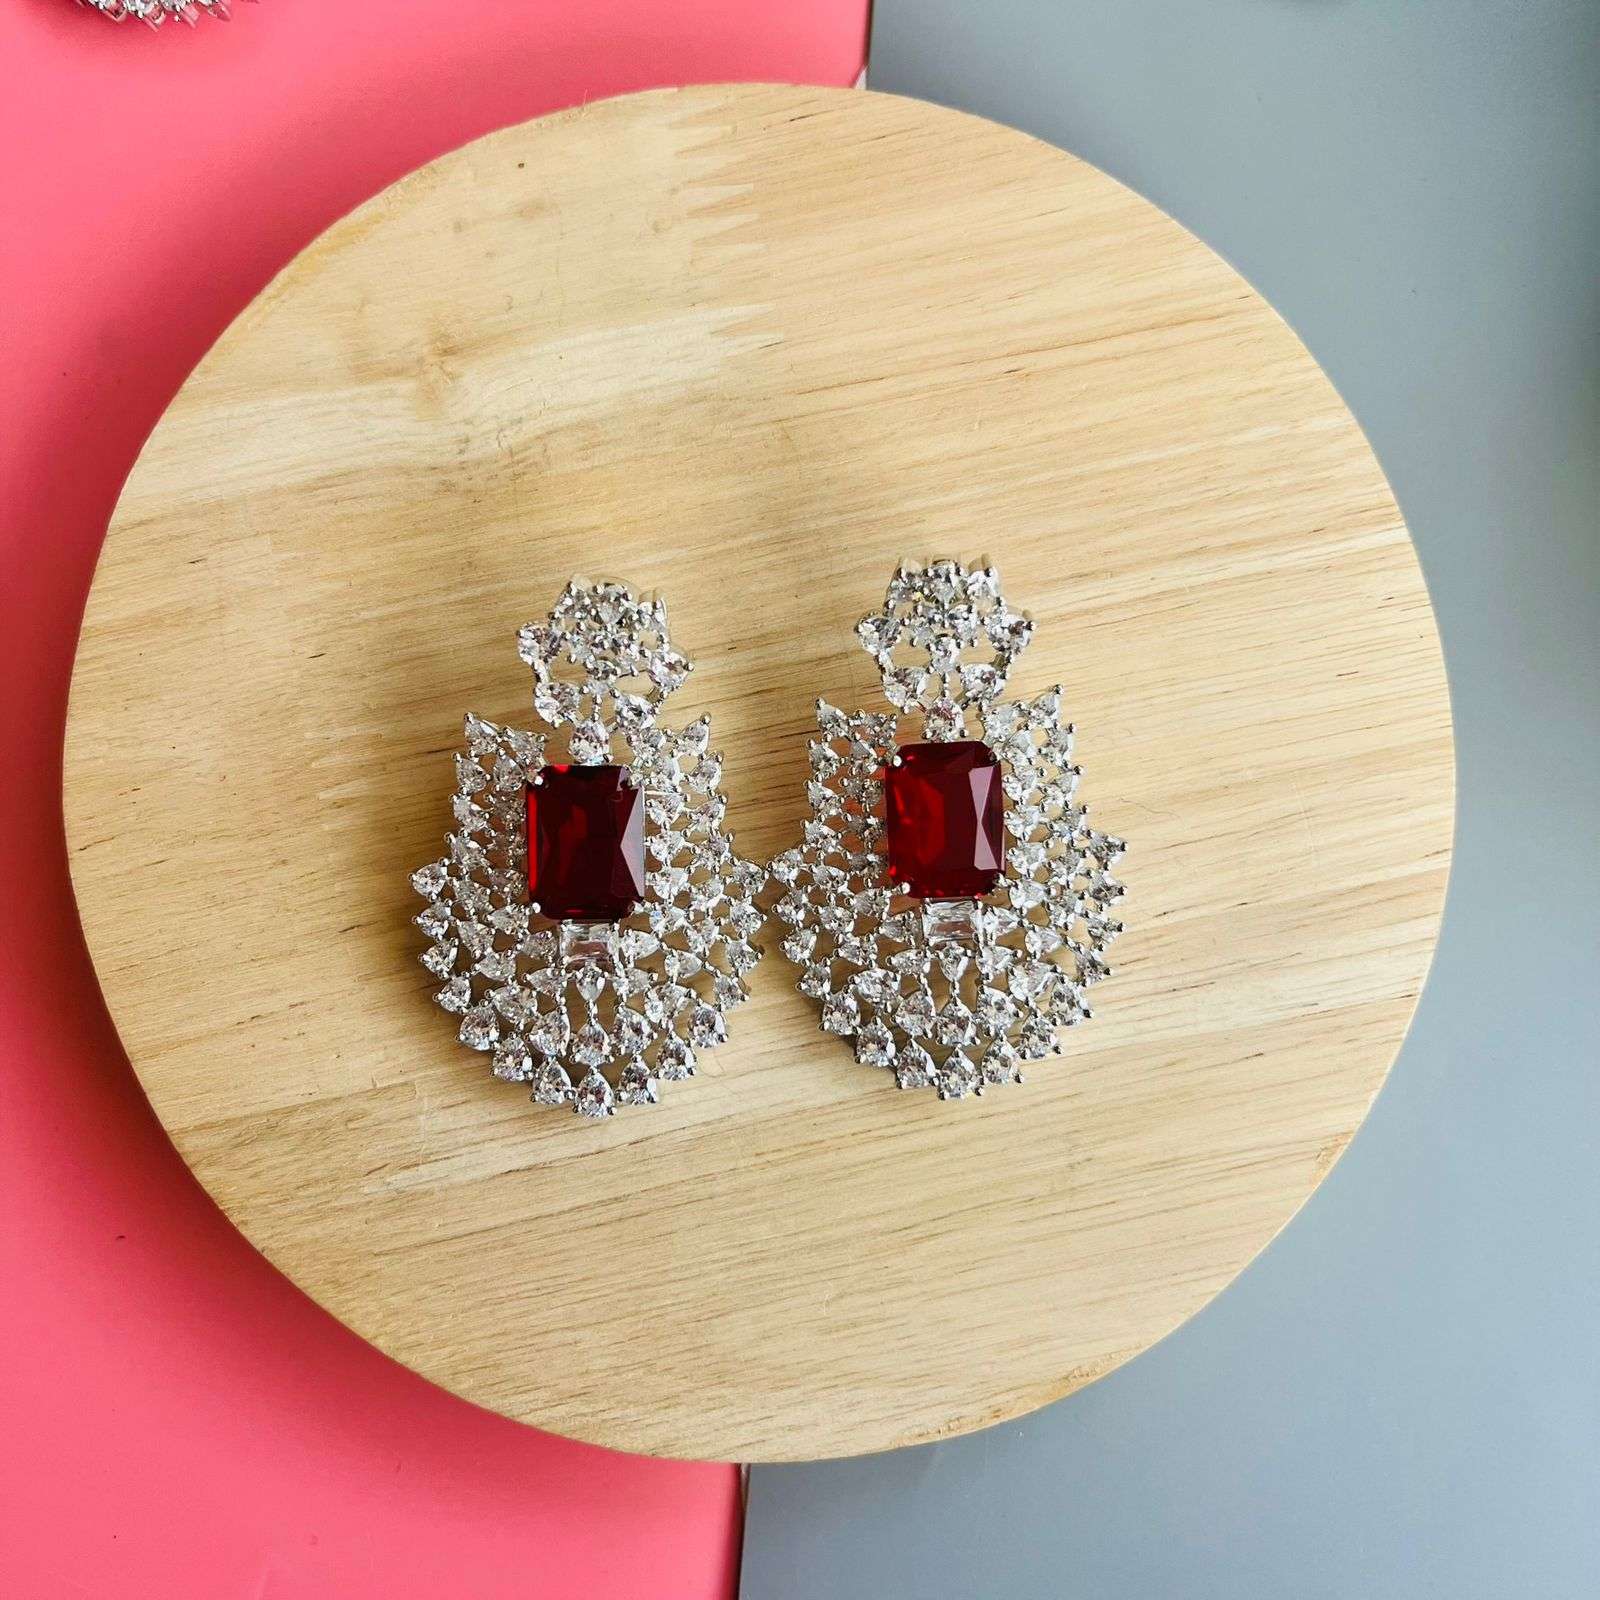 Ad Opal earrings Velvet box by Shweta